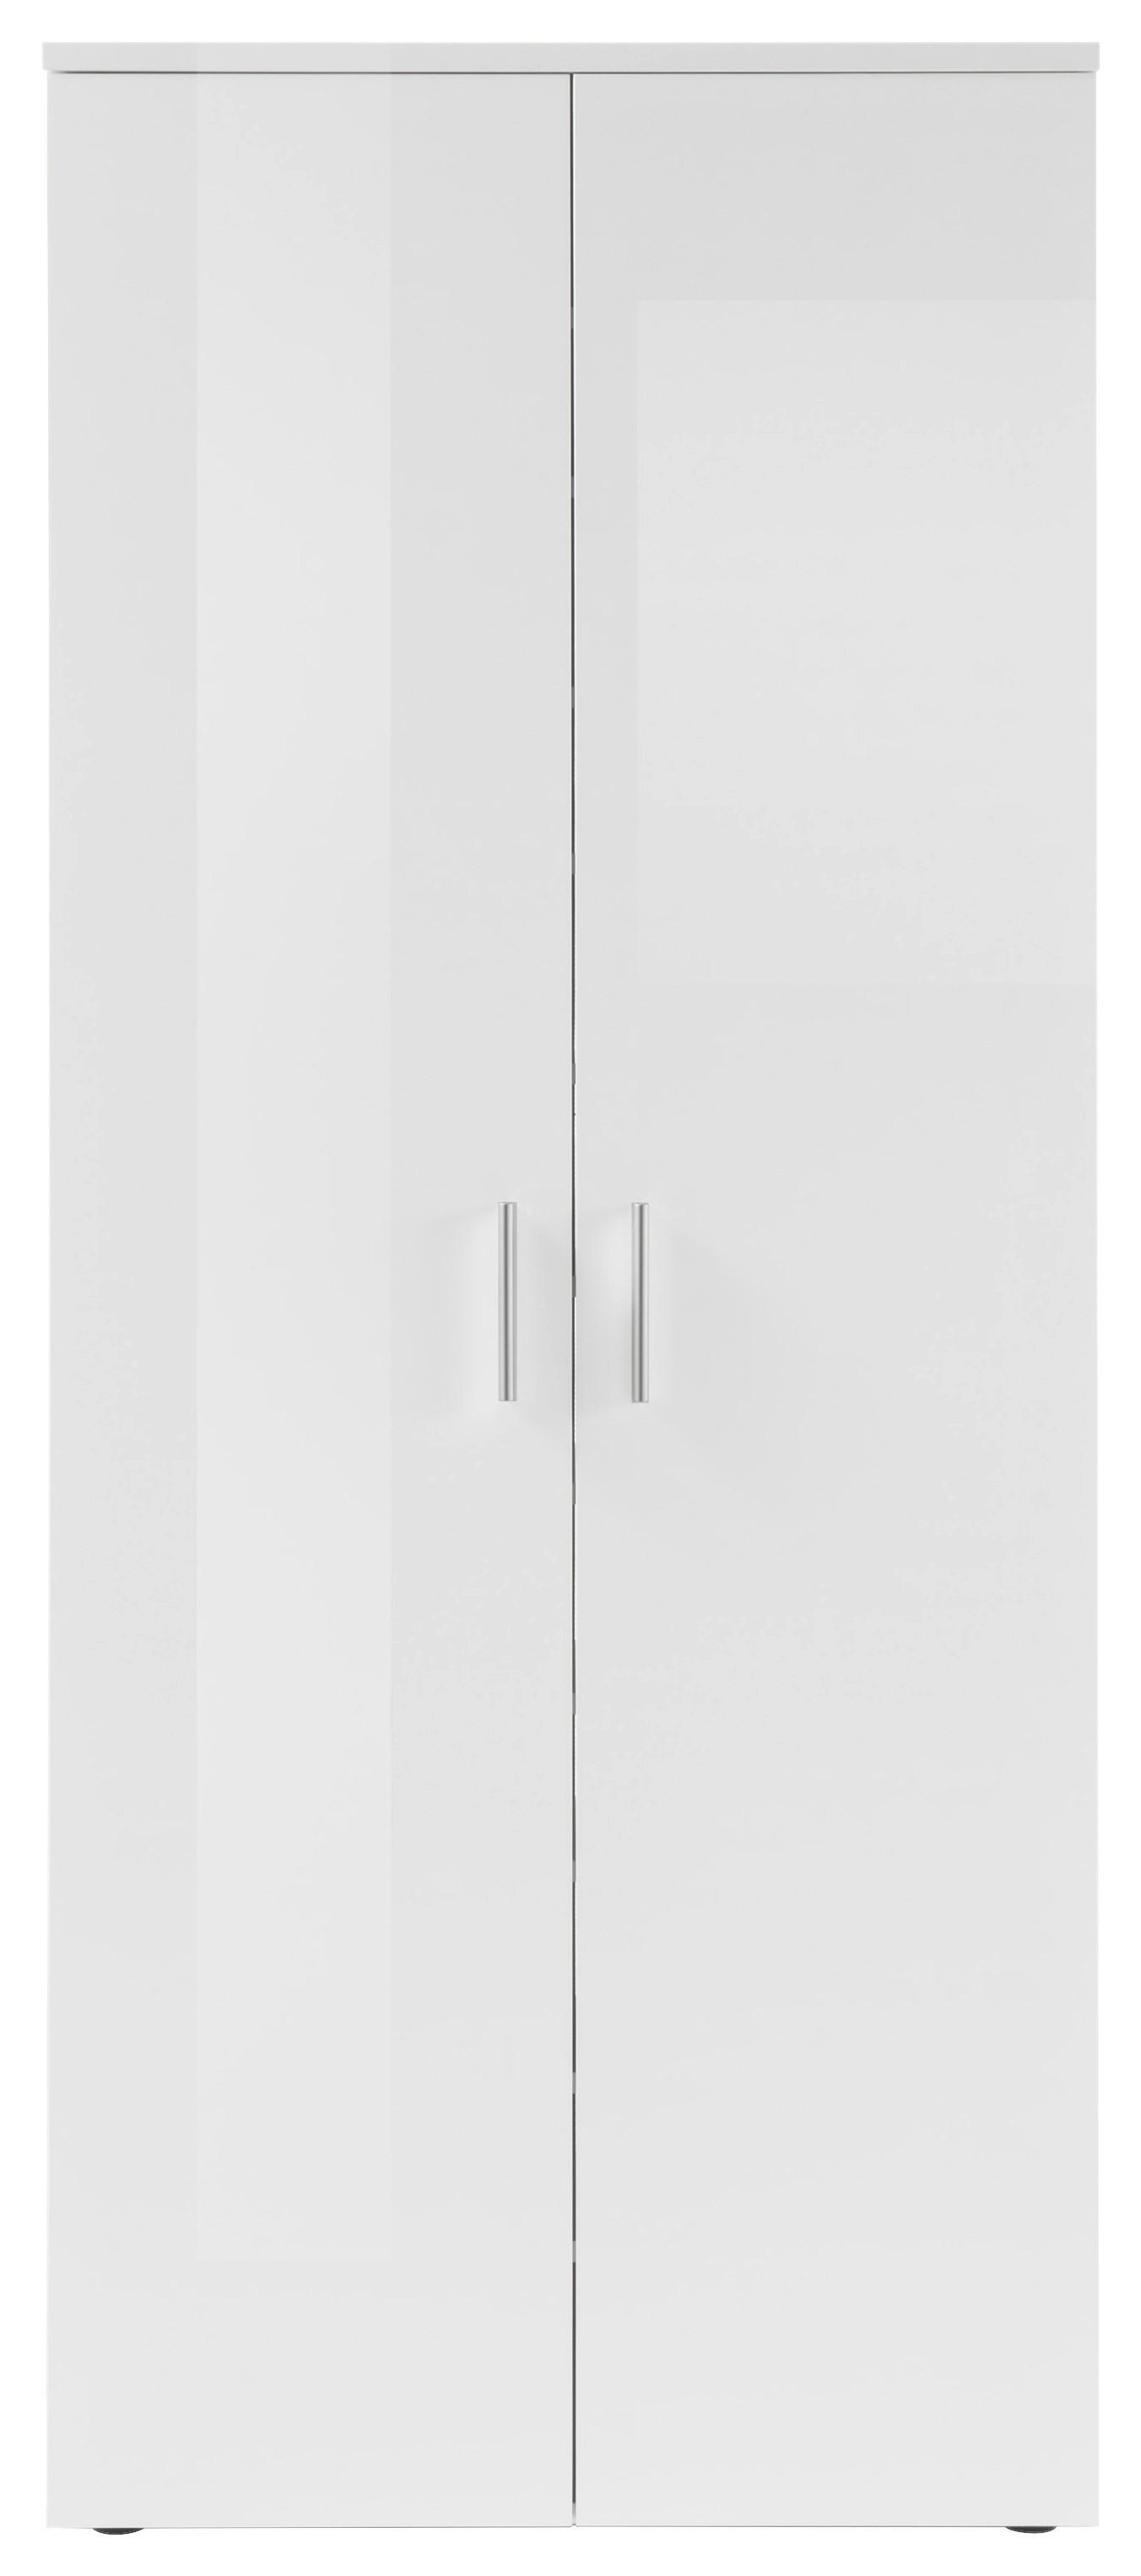 SCHUHSCHRANK Weiß  - Silberfarben/Weiß, Design, Holzwerkstoff/Kunststoff (80/190/35cm) - MID.YOU